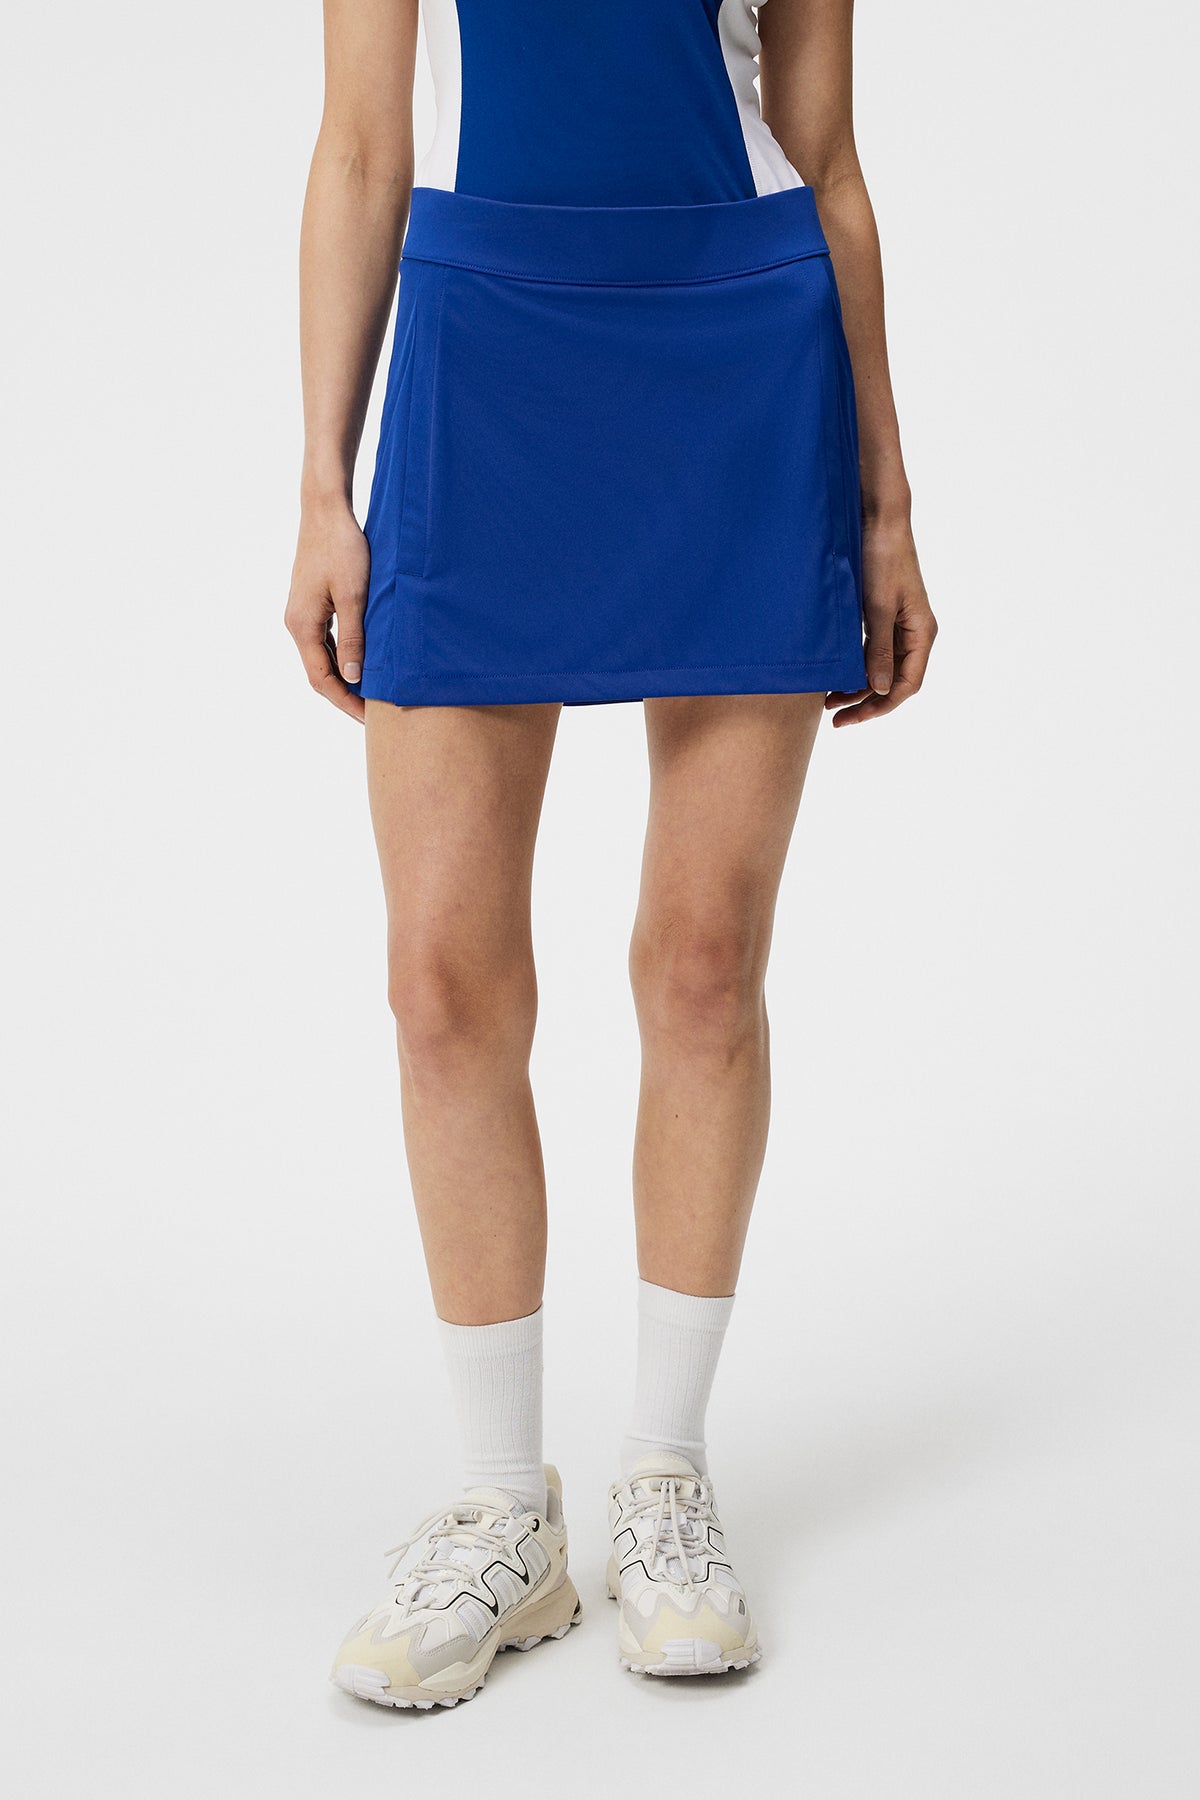 Amelie Skirt / Sodalite Blue